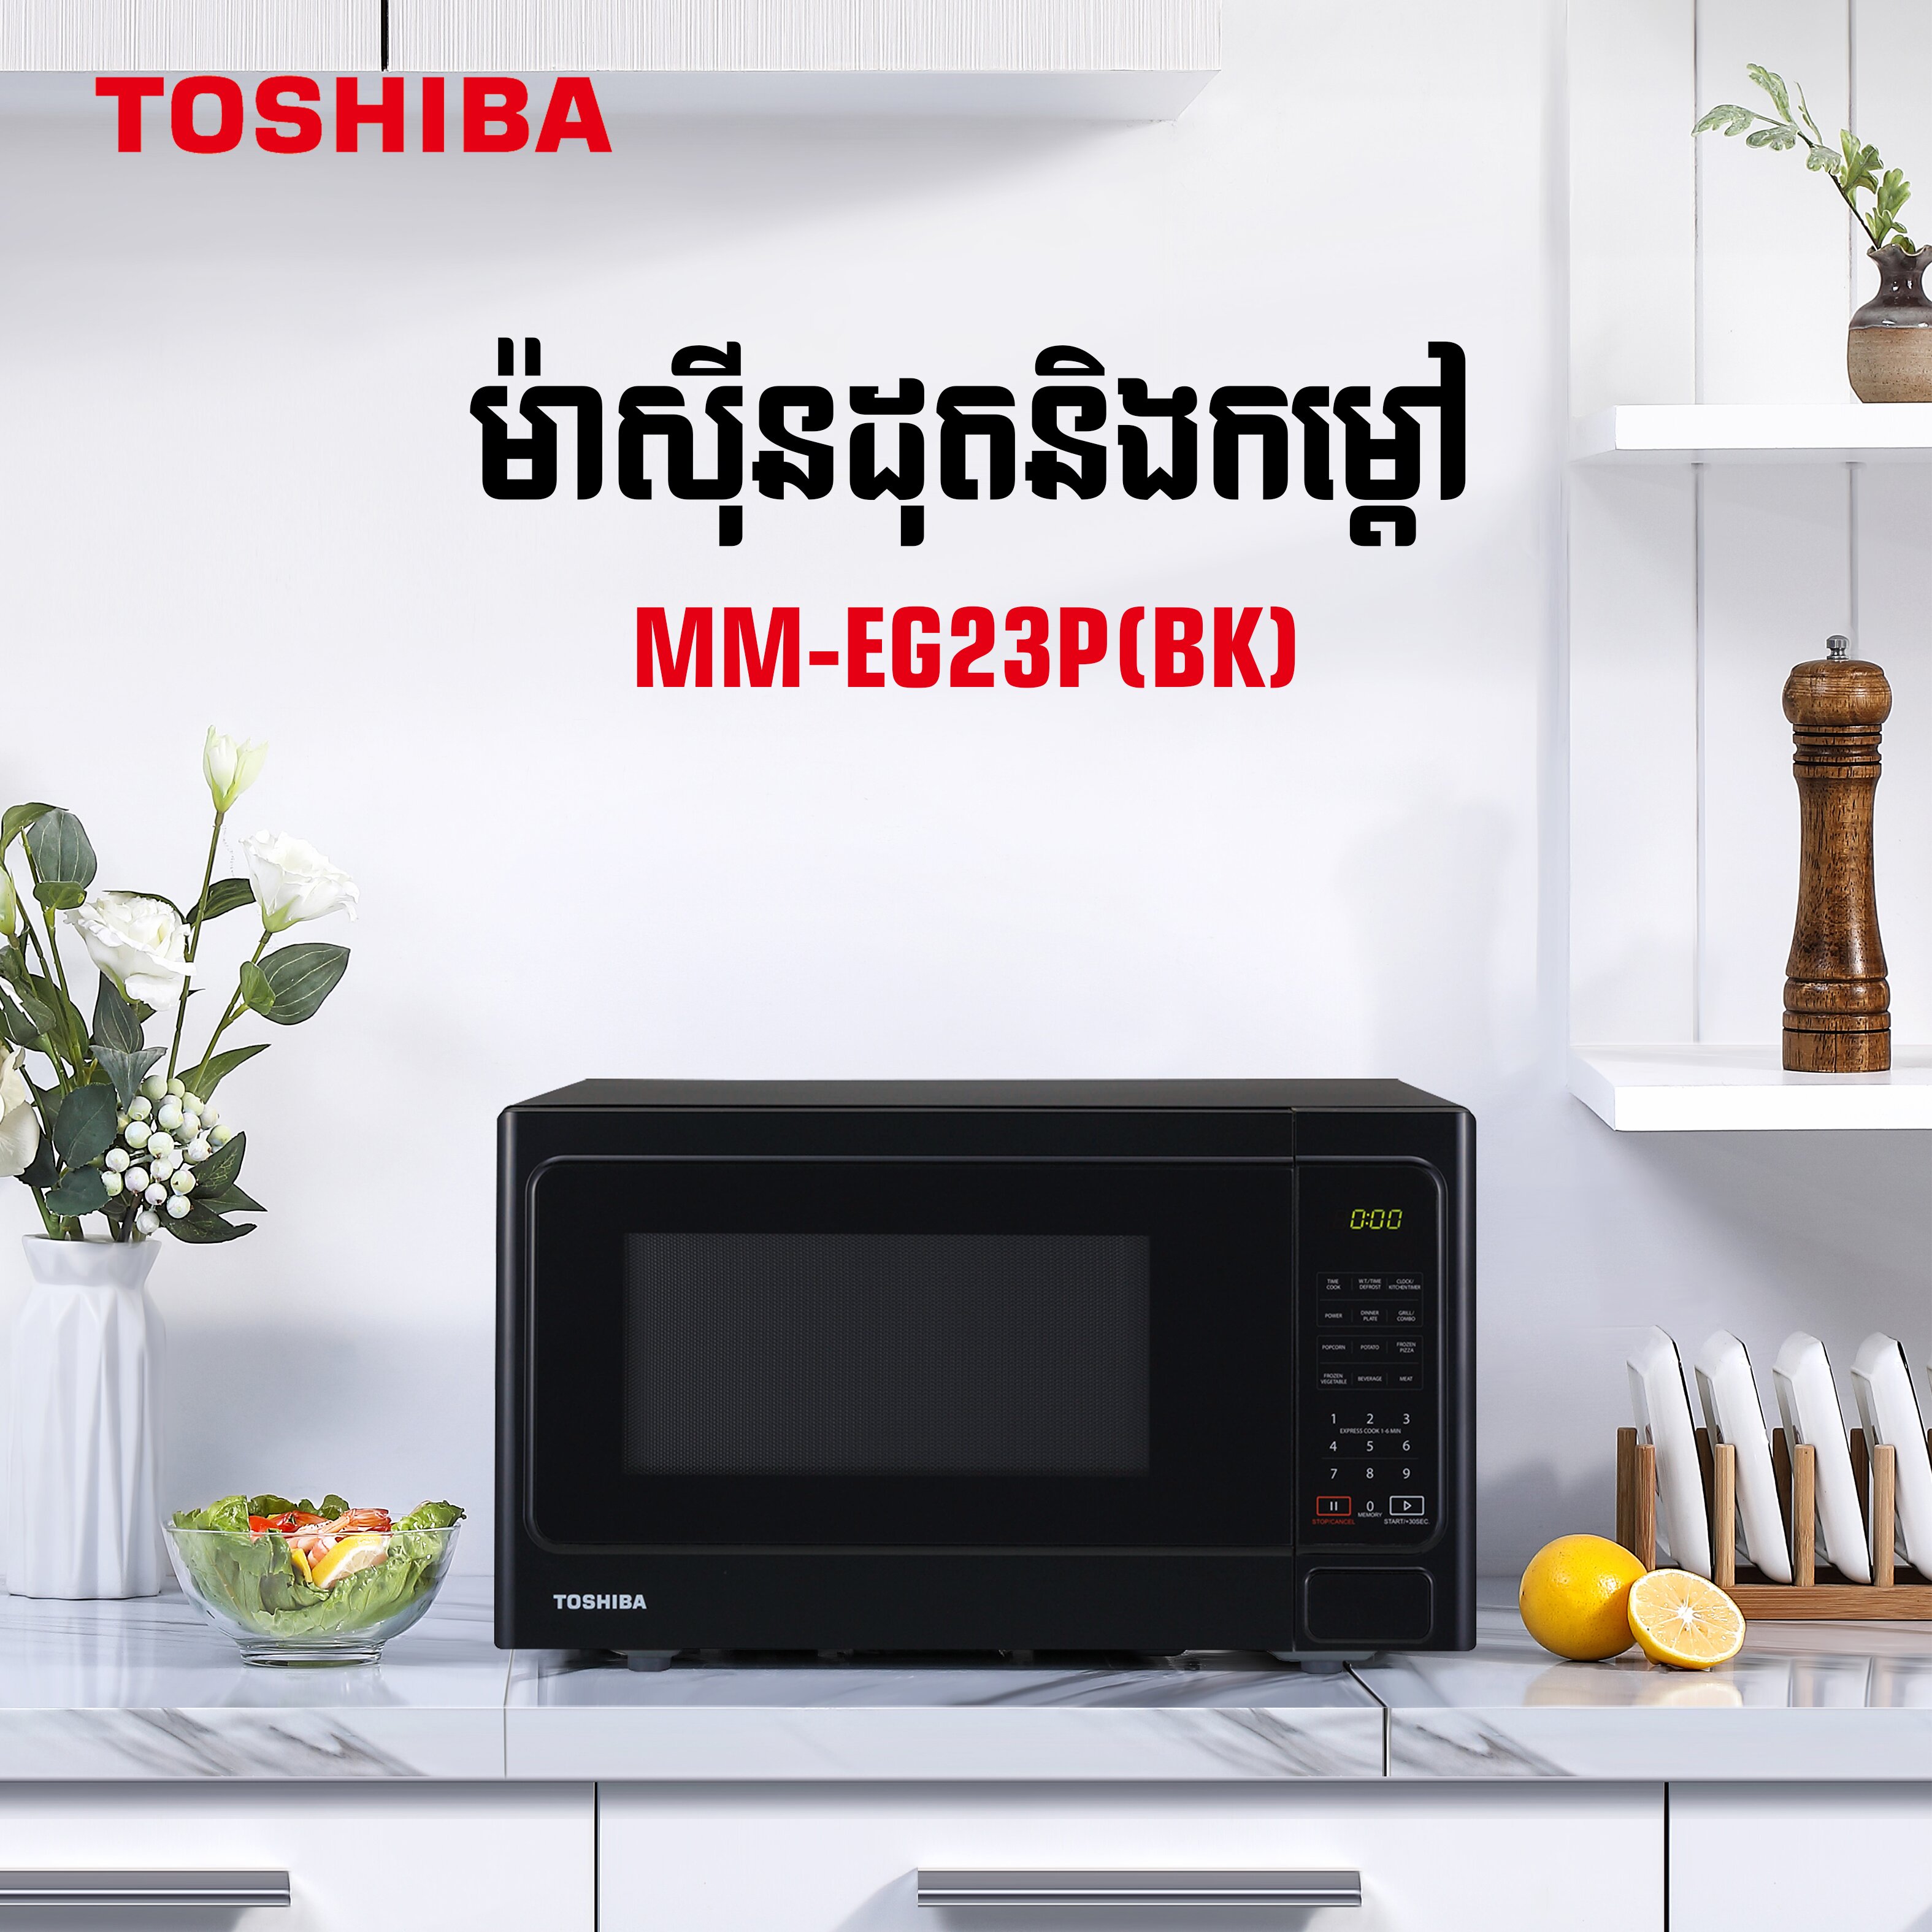 TOSHIBA Microwave Oven MM-EG23P(BK) - VTENH